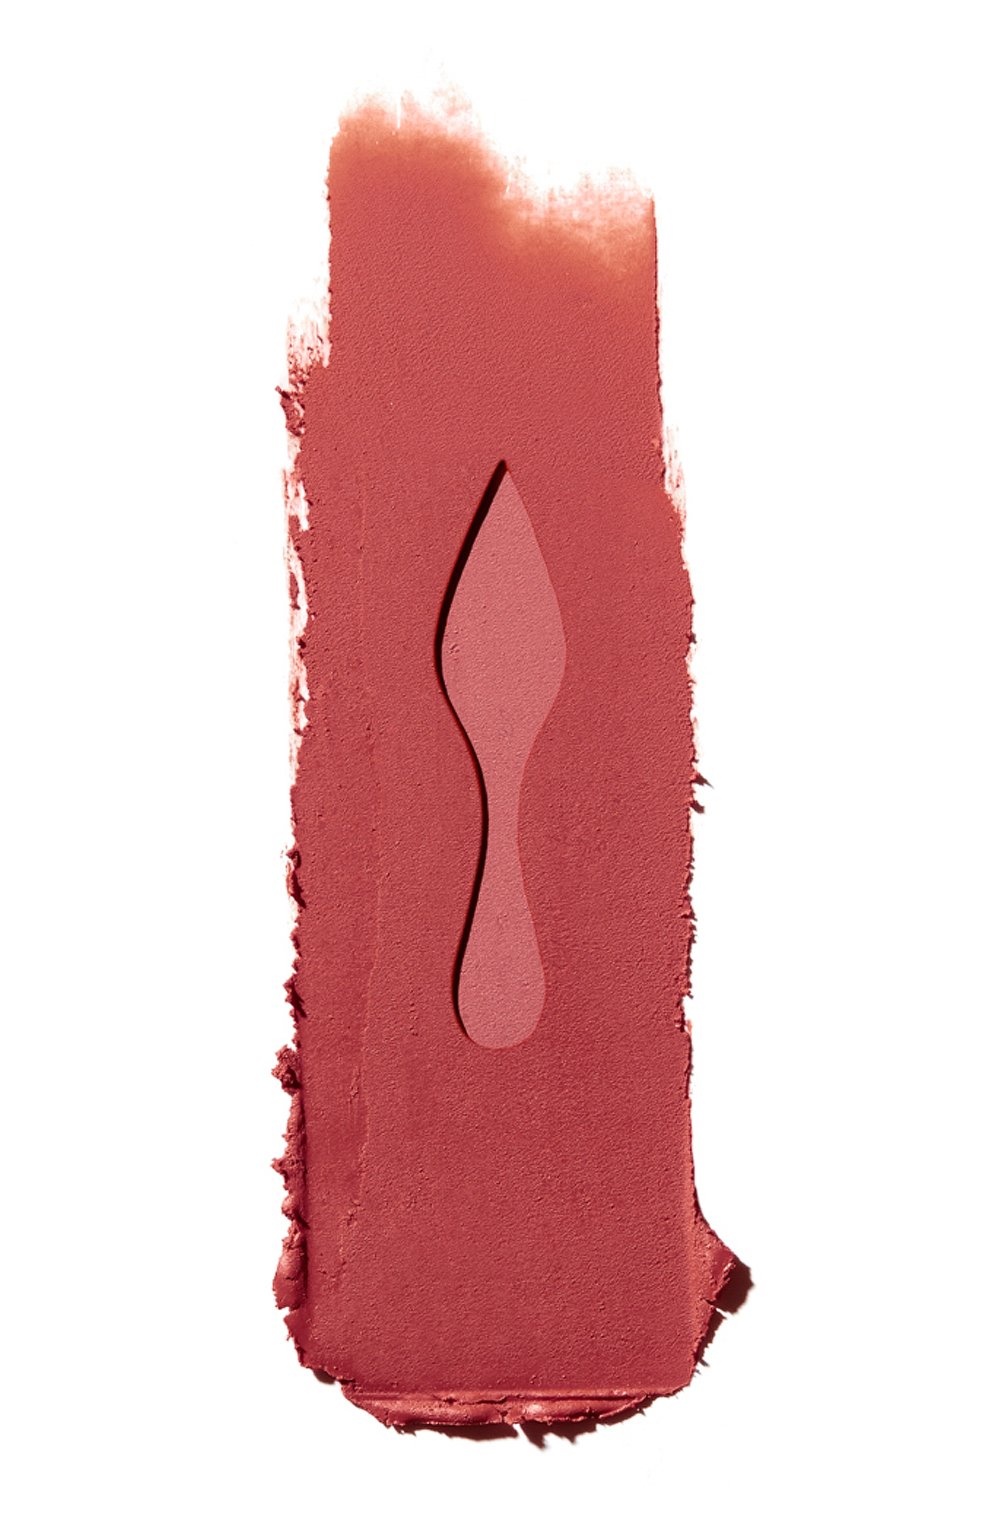 Матовая помада для губ rouge louboutin velvet matte, оттенок bare rococotte CHRISTIAN LOUBOUTIN  цвета, арт. 8435415068765 | Фото 2 (Финишное покрытие: Матовый)